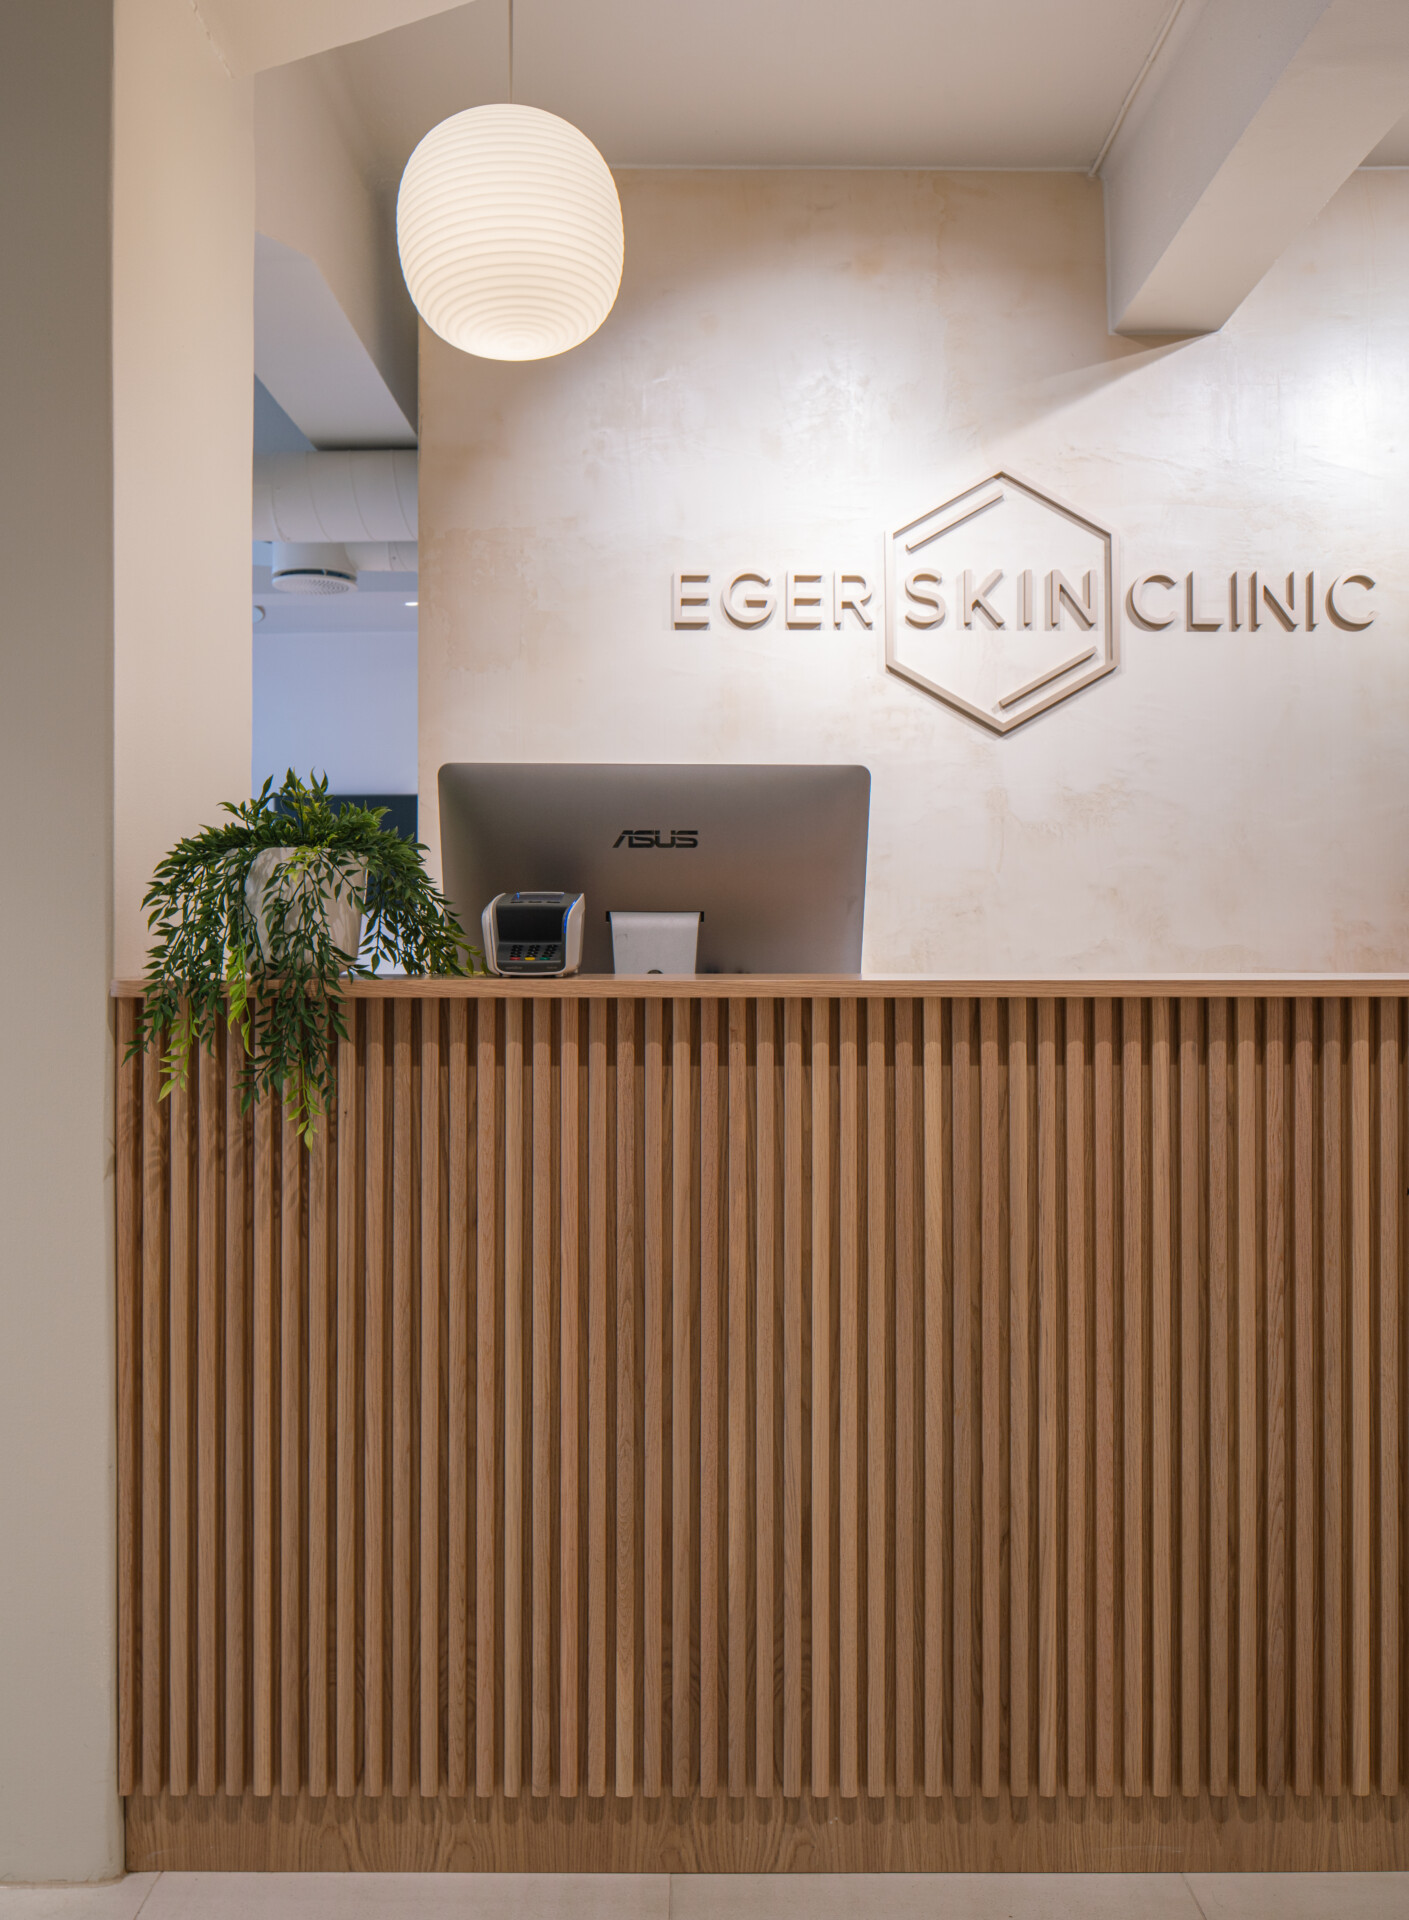 Sane Eger skin clinic Kyrre Sundal 16